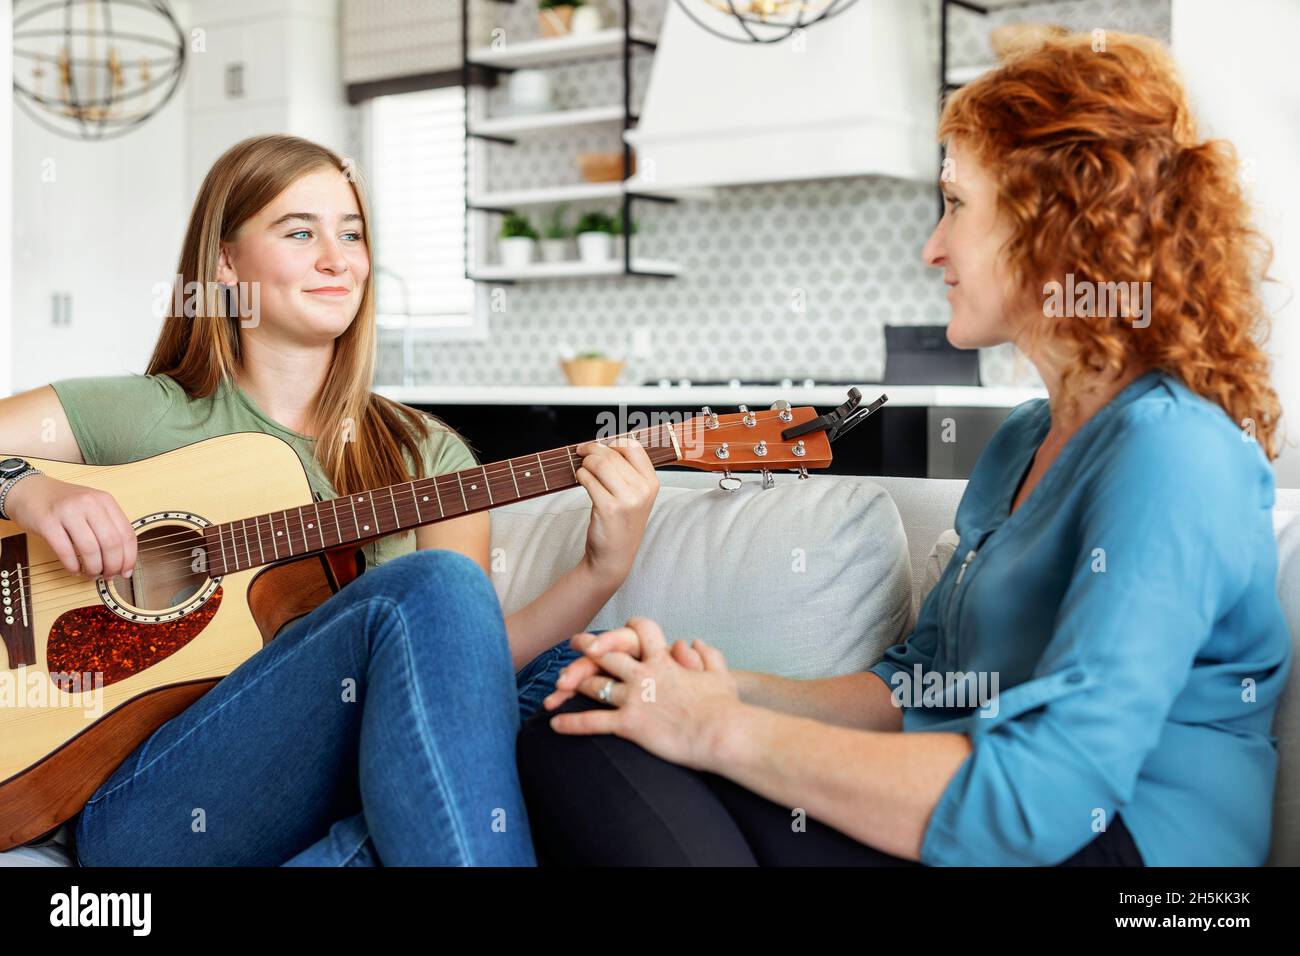 La mère et l'adolescente passent du temps de qualité ensemble à la maison tandis que la fille joue de la guitare; Edmonton, Alberta, Canada Banque D'Images